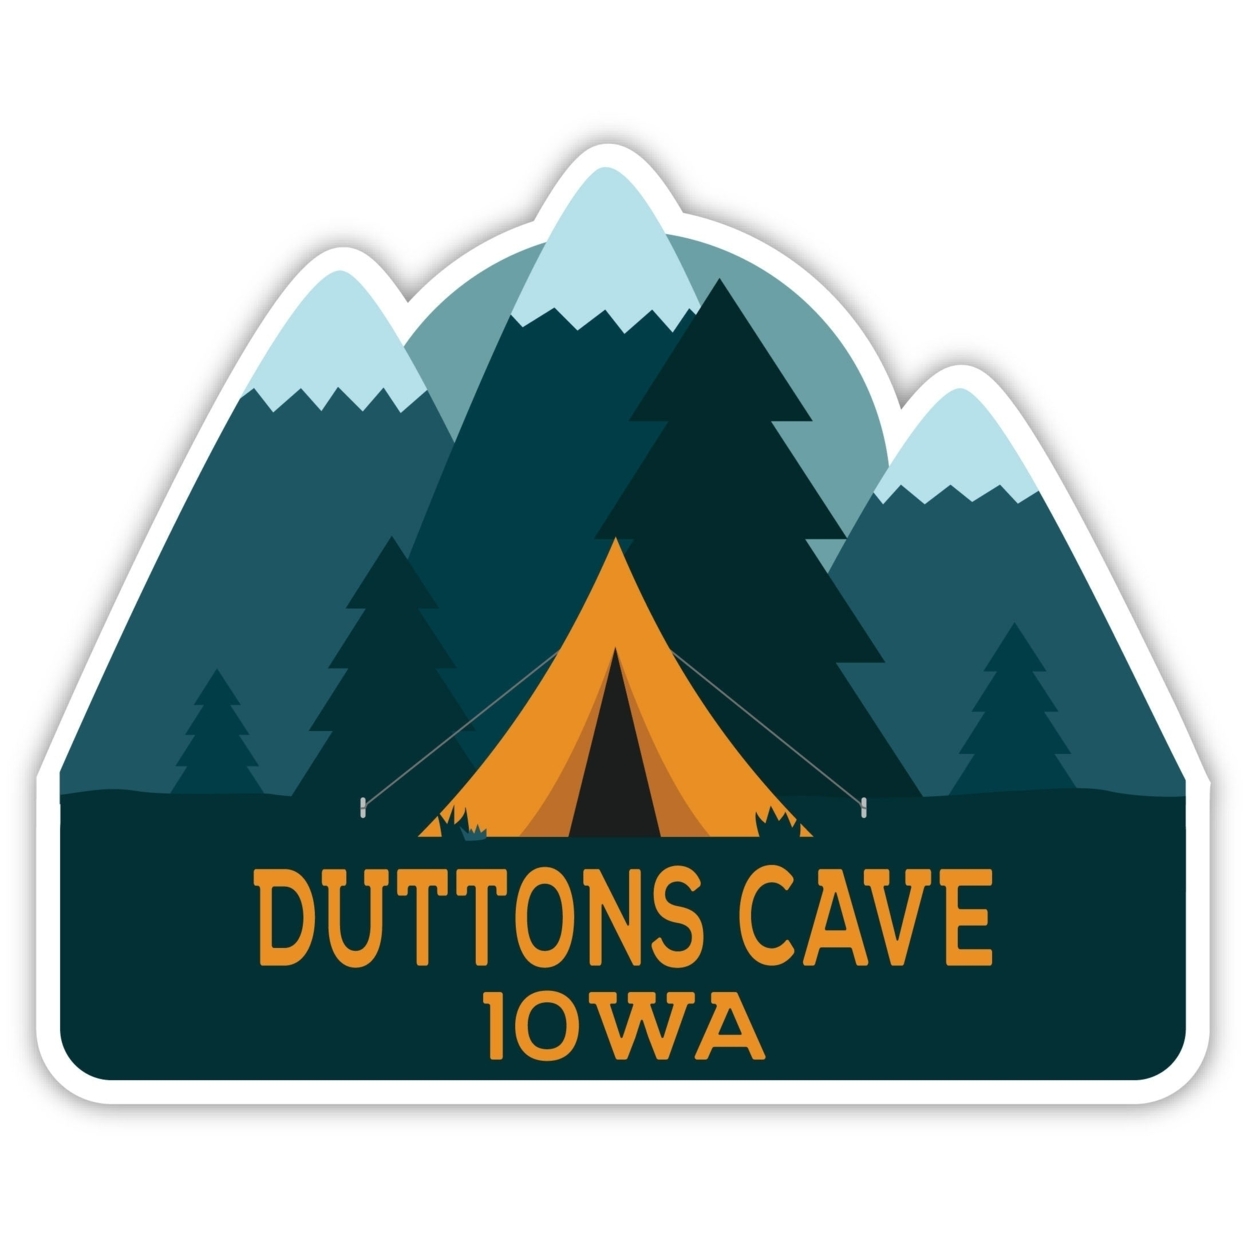 Duttons Cave Iowa Souvenir Decorative Stickers (Choose Theme And Size) - Single Unit, 8-Inch, Tent